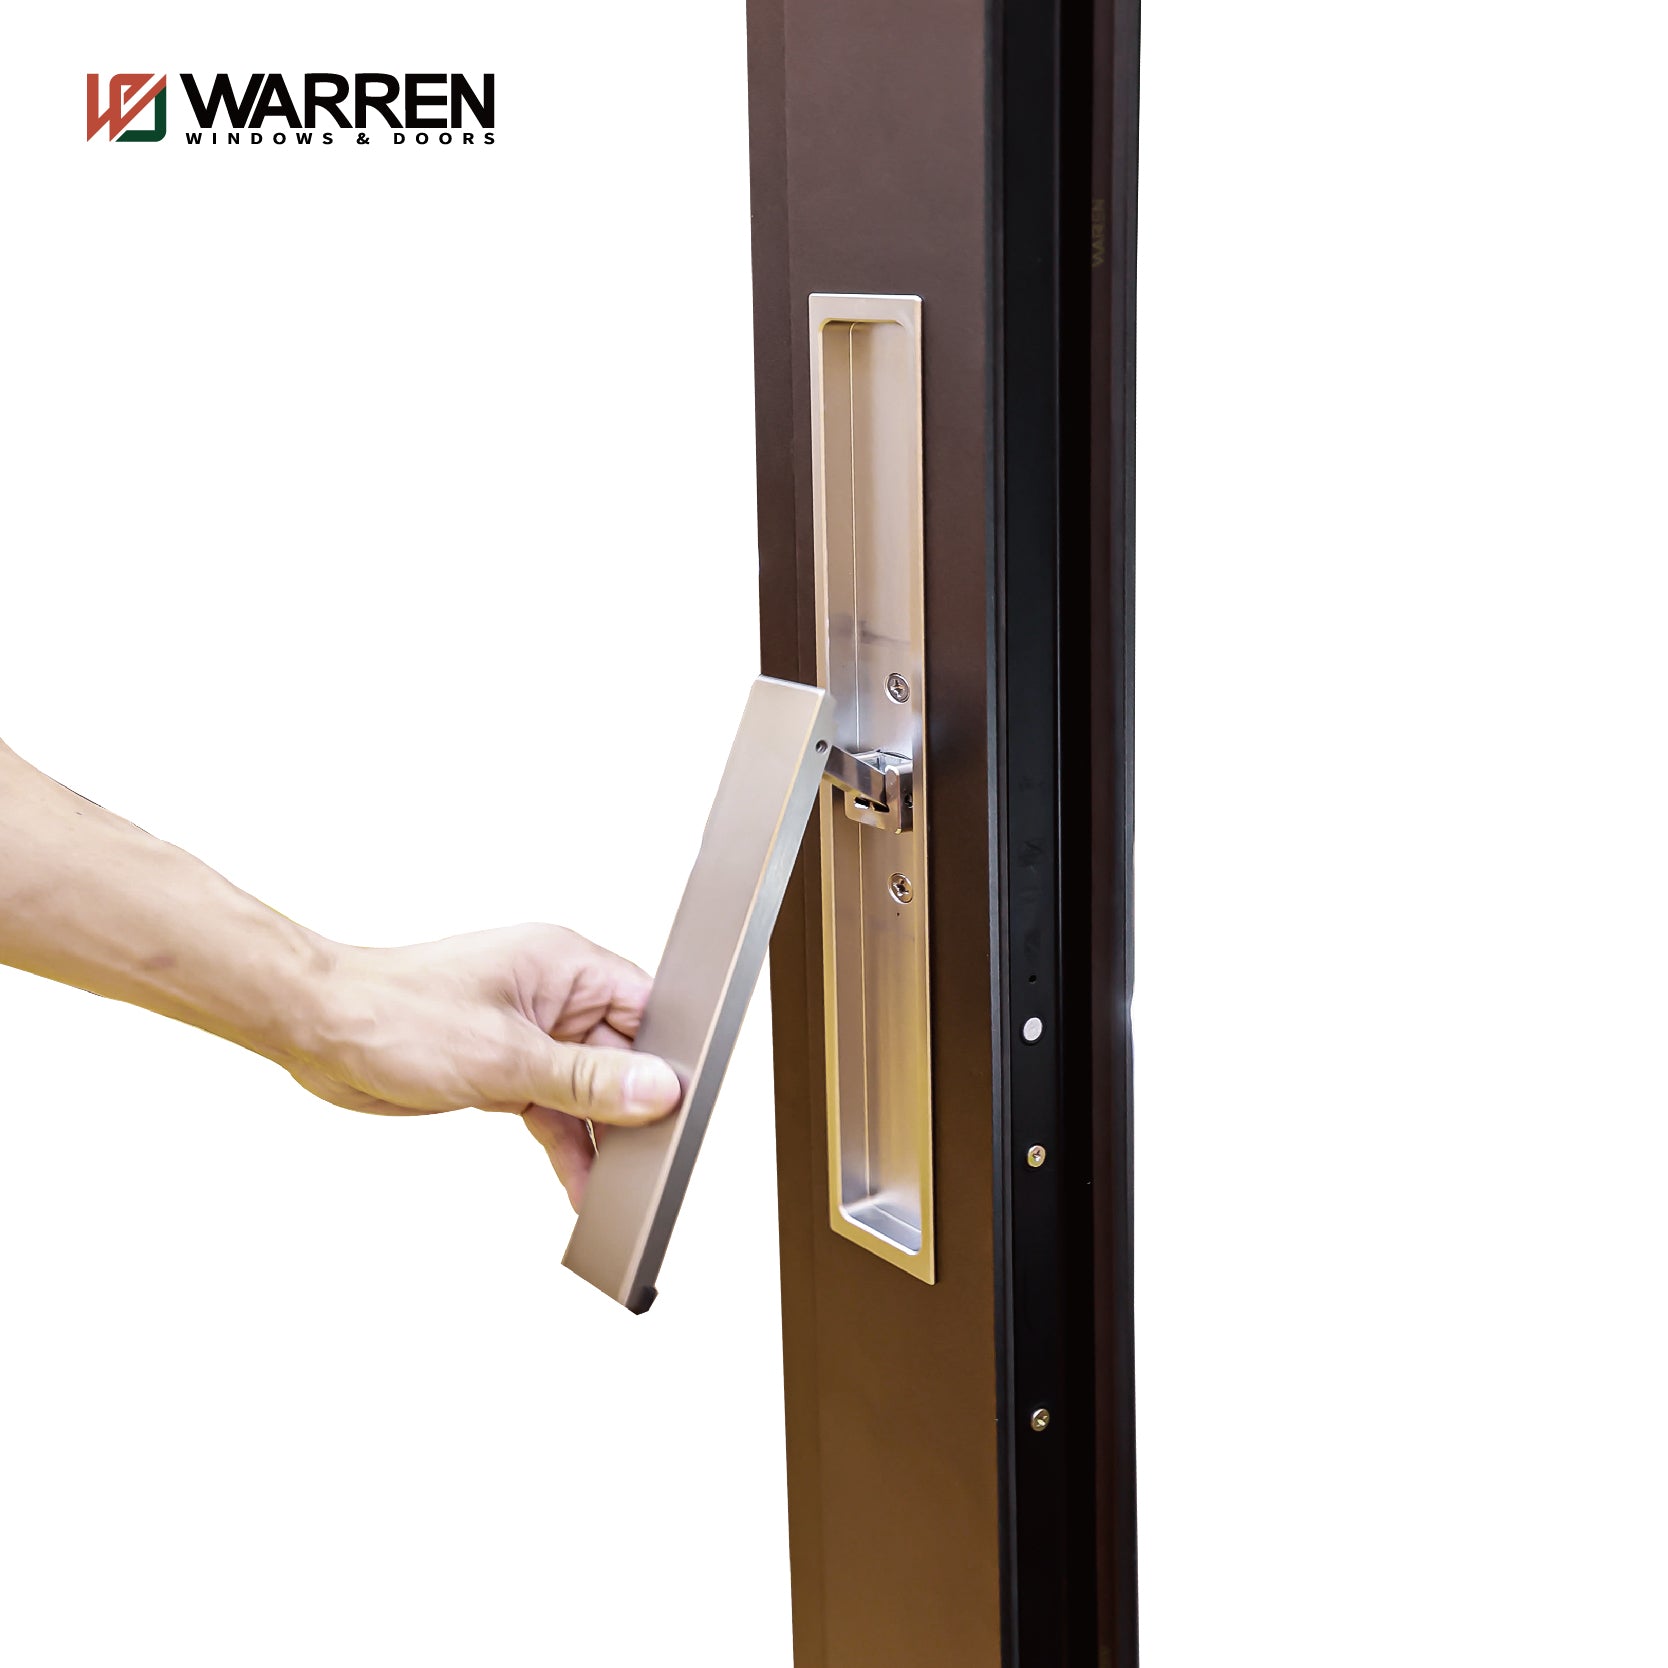 Warren Factory Price Manufacturer Supplier Patio Doors Sliding Soundproof Glass Shower Slide Door